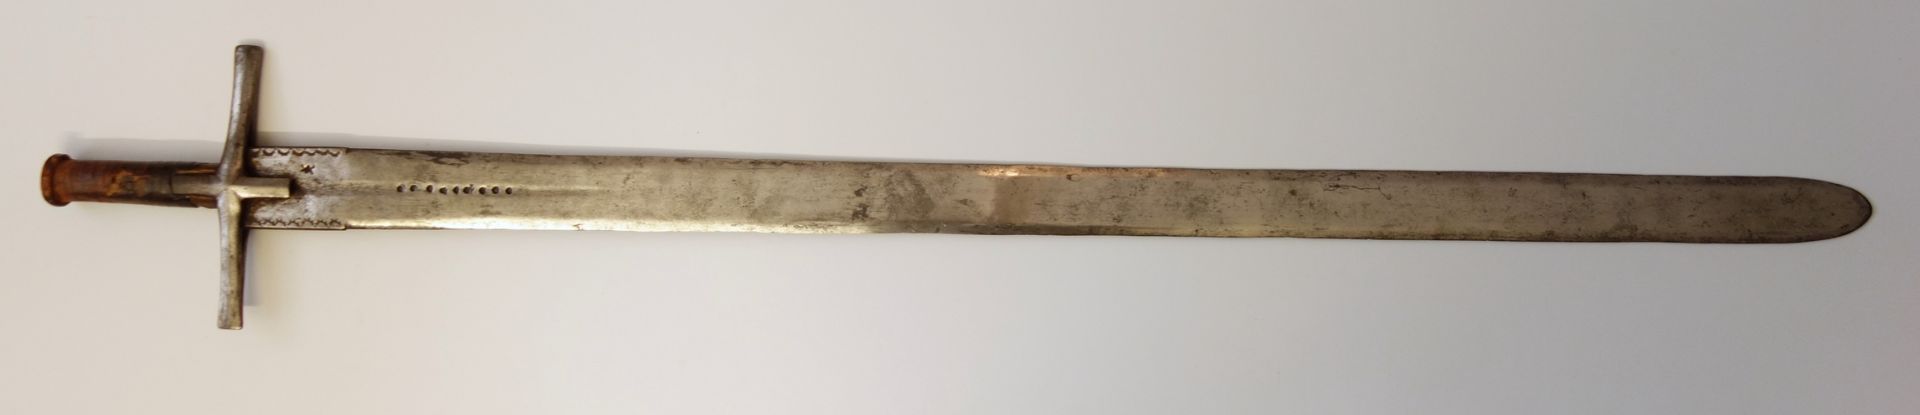 Kaskhara sword, Sudan c. 1900